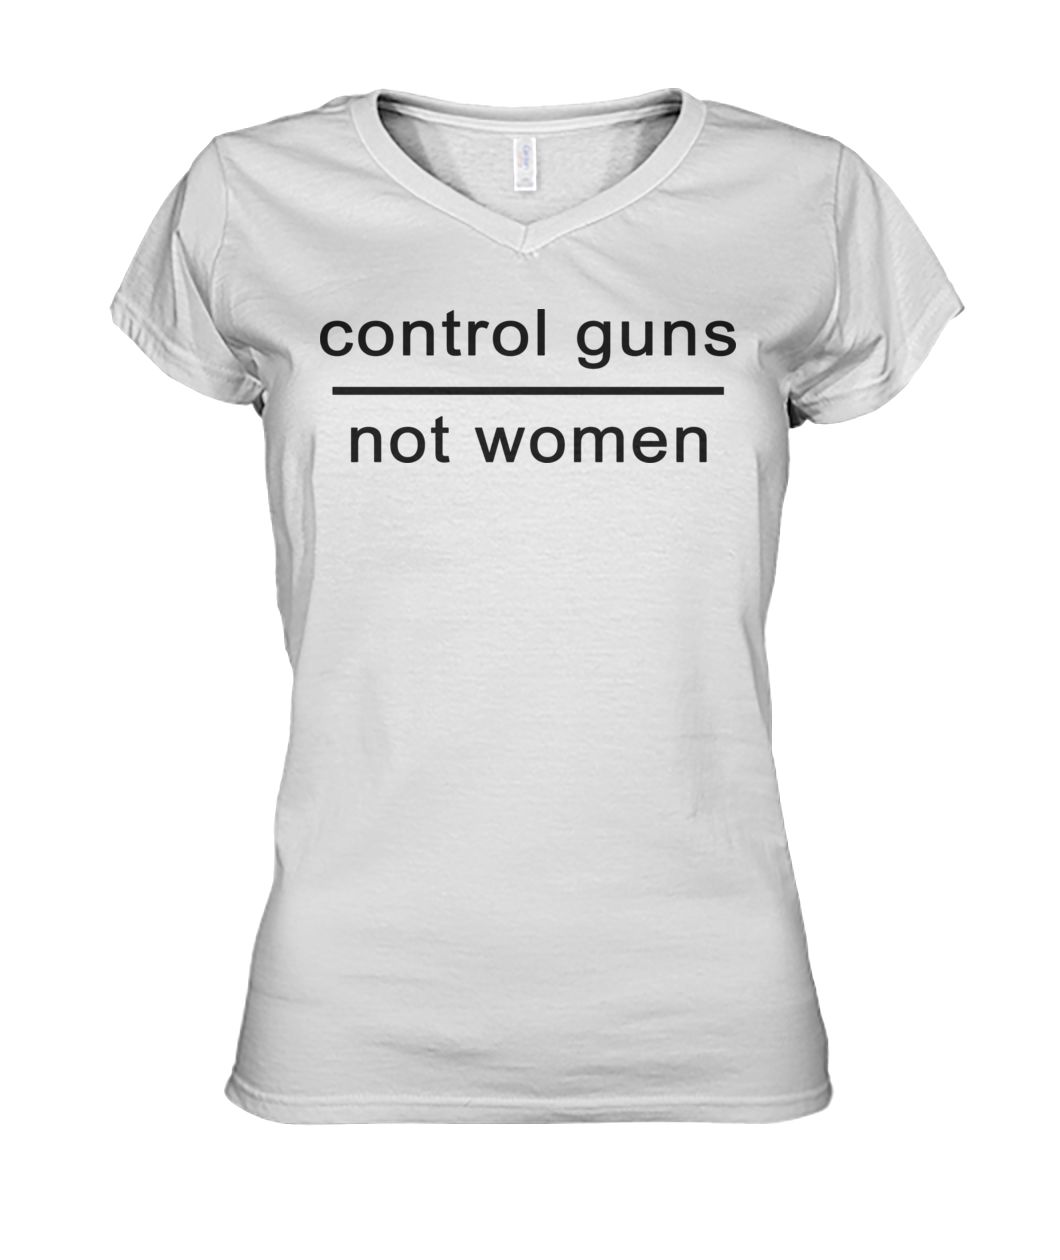 Control guns not women women's v-neck